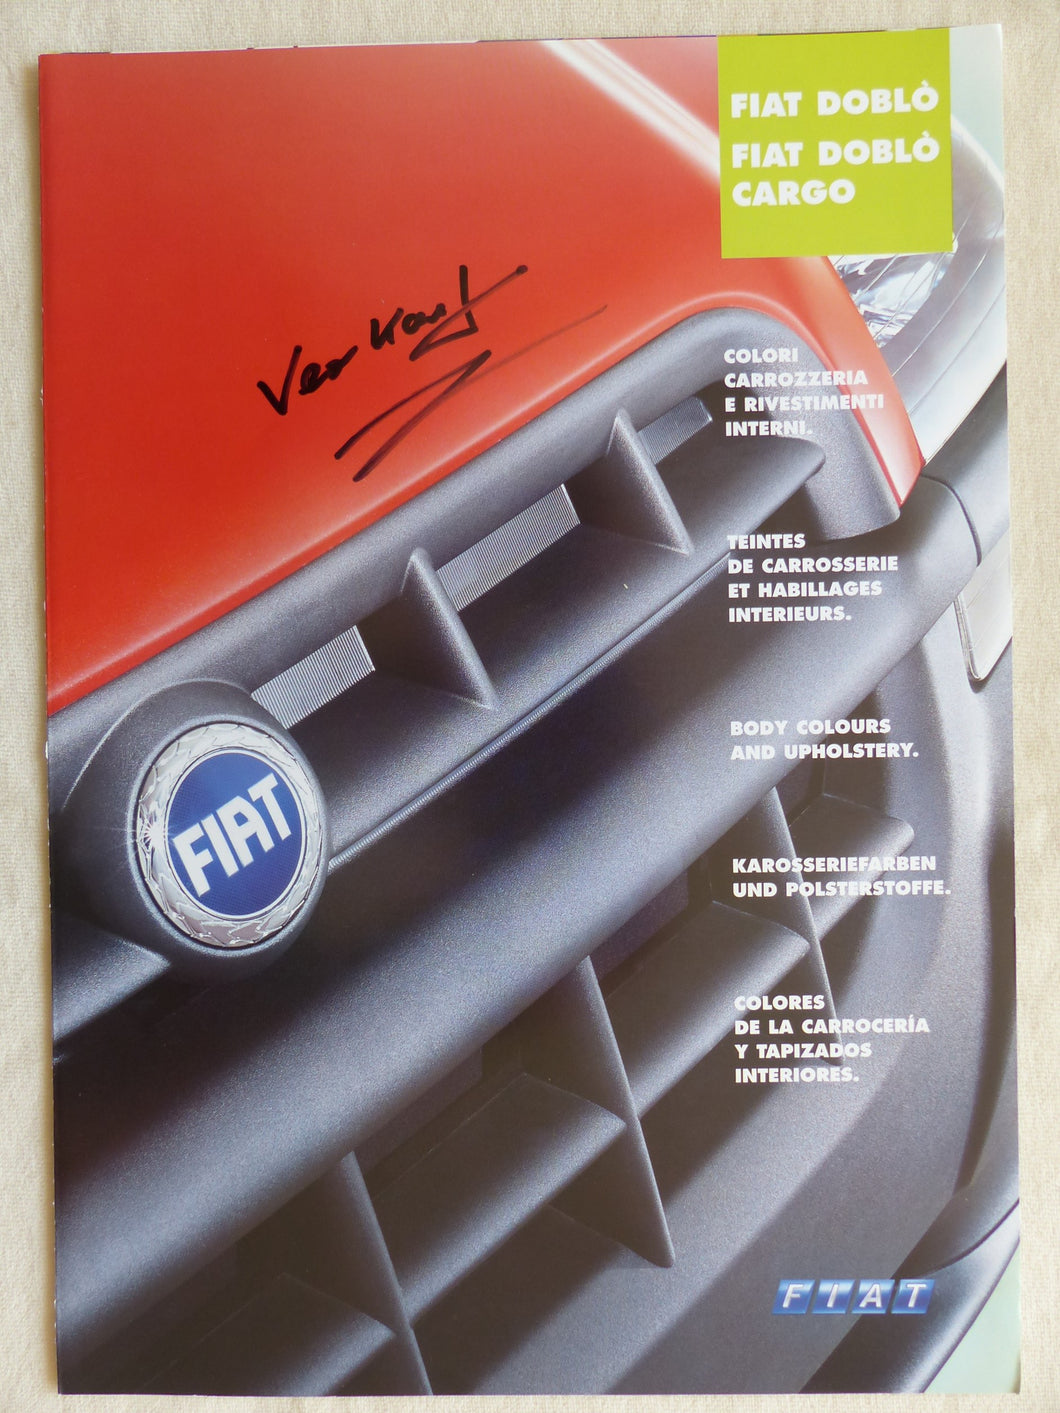 Fiat Doblo Cargo - Farben und Polster MJ 2001 - Prospekt Brochure 10.2000